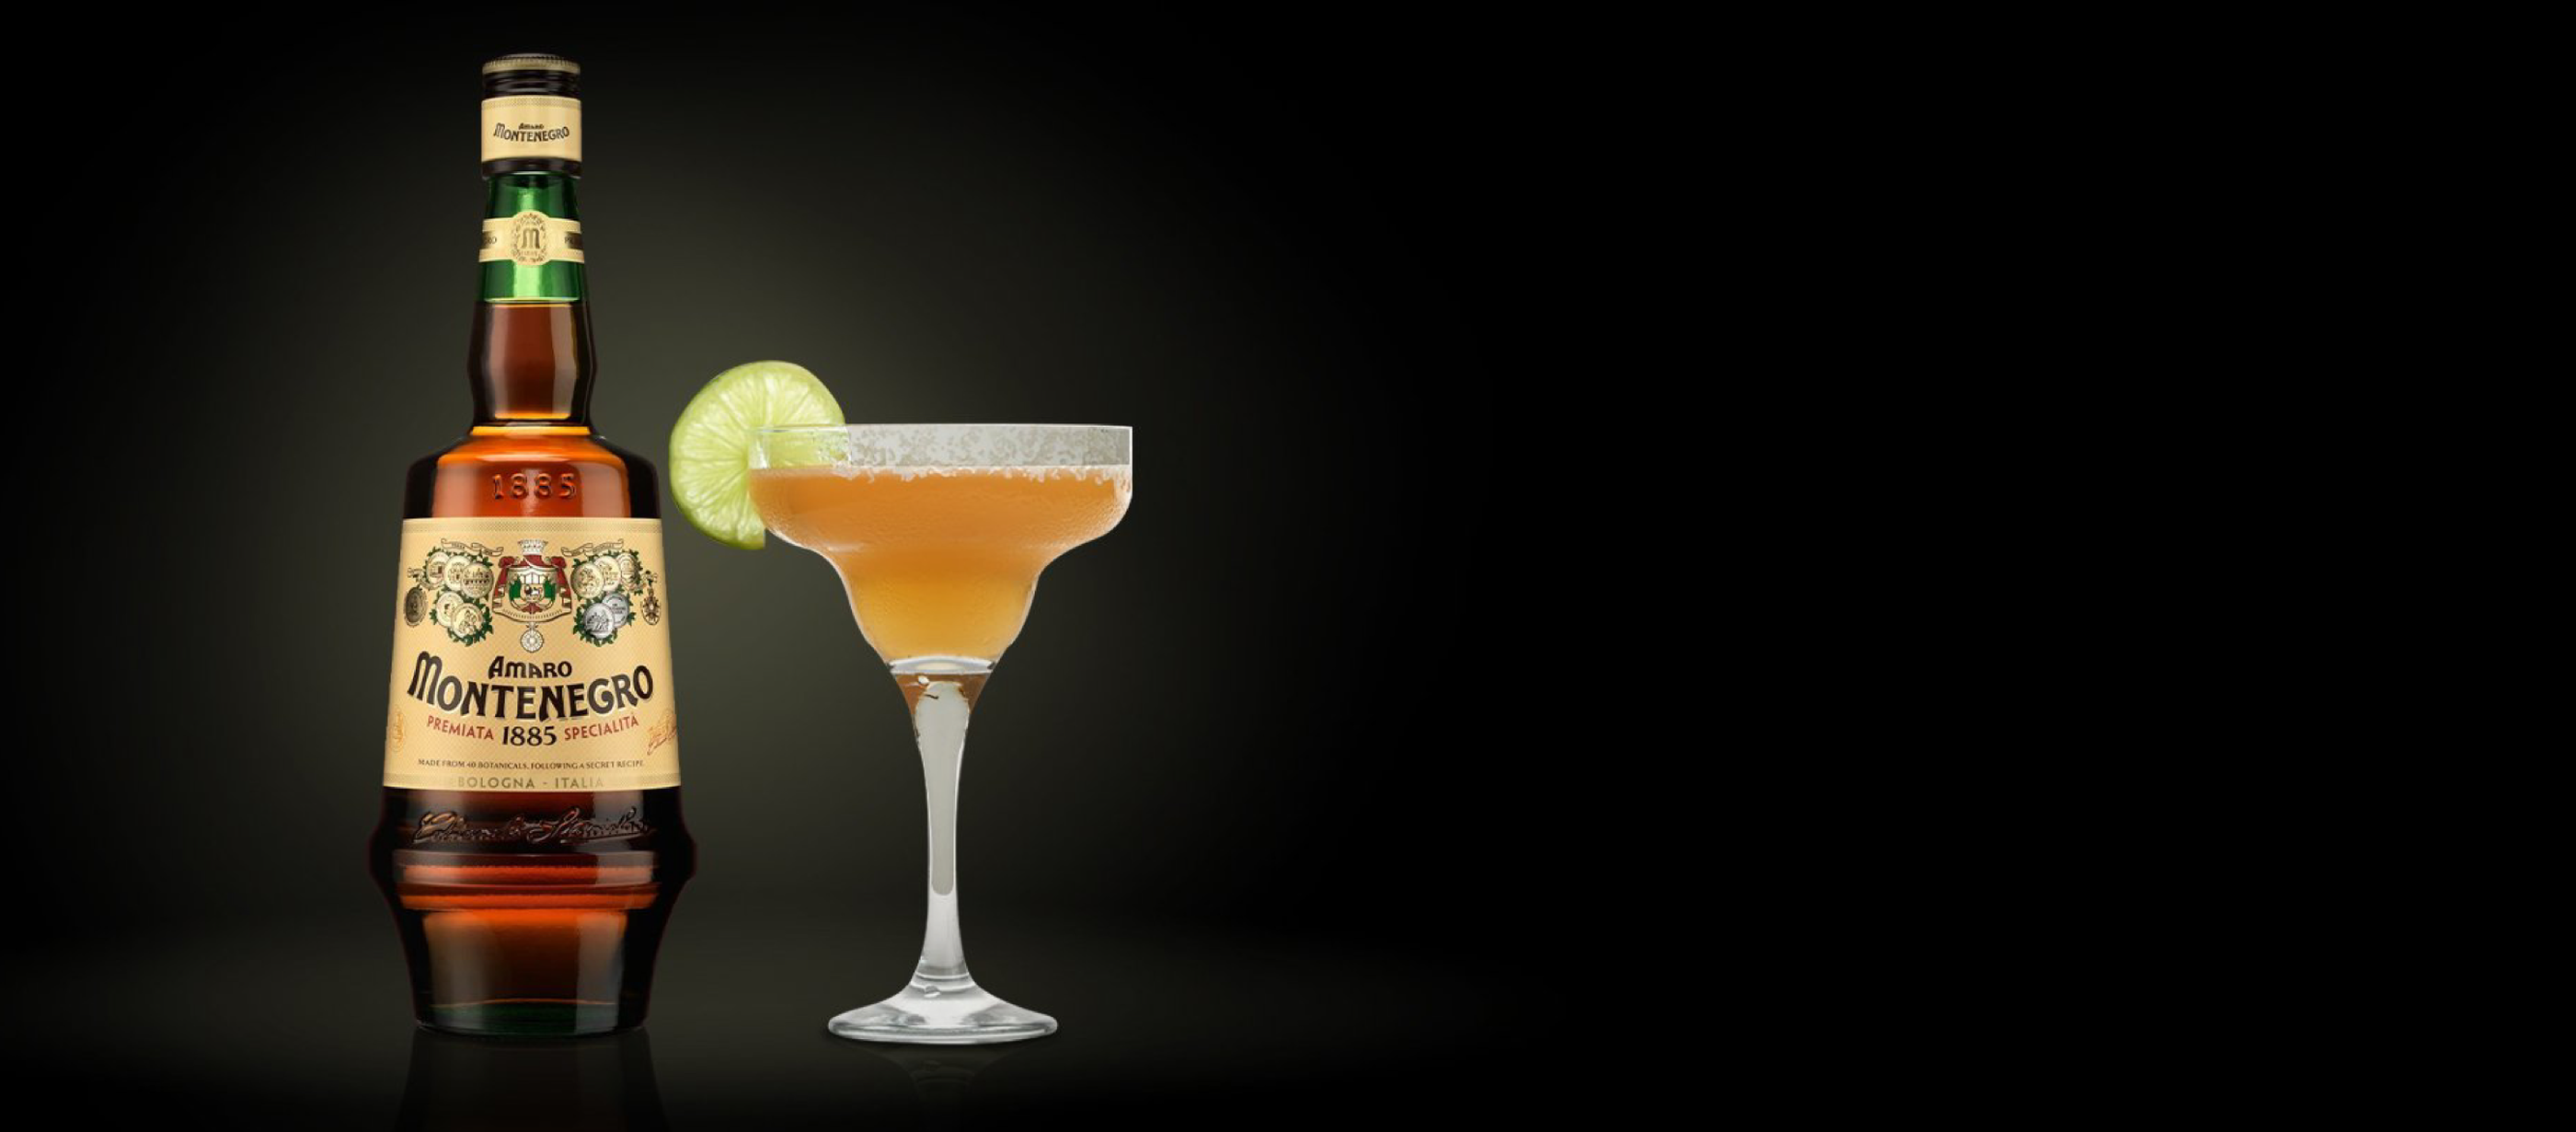 The Amaro Montenegro Monterita Cocktail